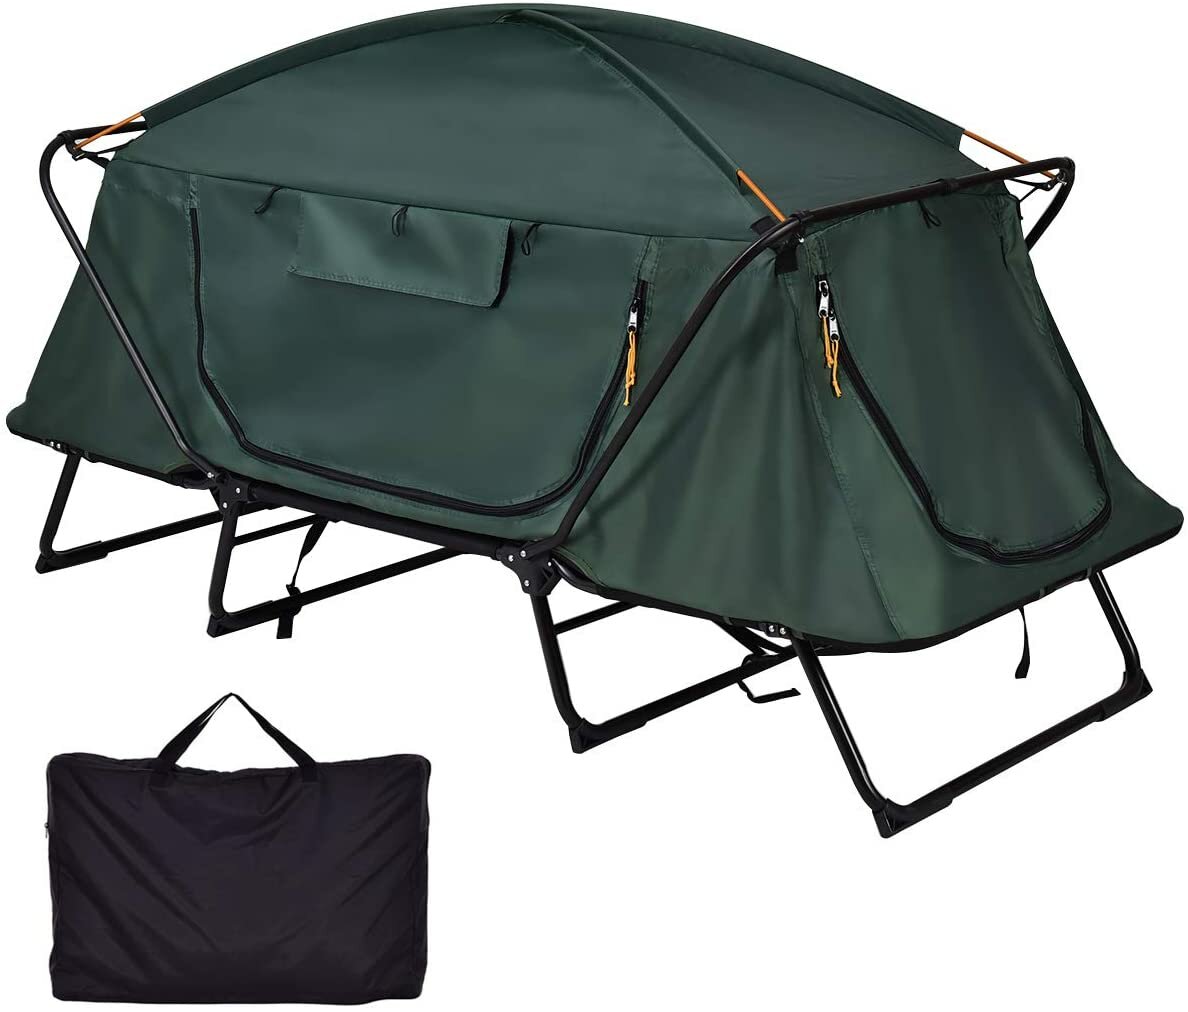 Barraca de camping para 2 pessoas fora do solo dobrável impermeável de dupla camada proteção contra o frio anti-vento guarda-sol abóbada para caminhadas e viagens com saco de transporte.